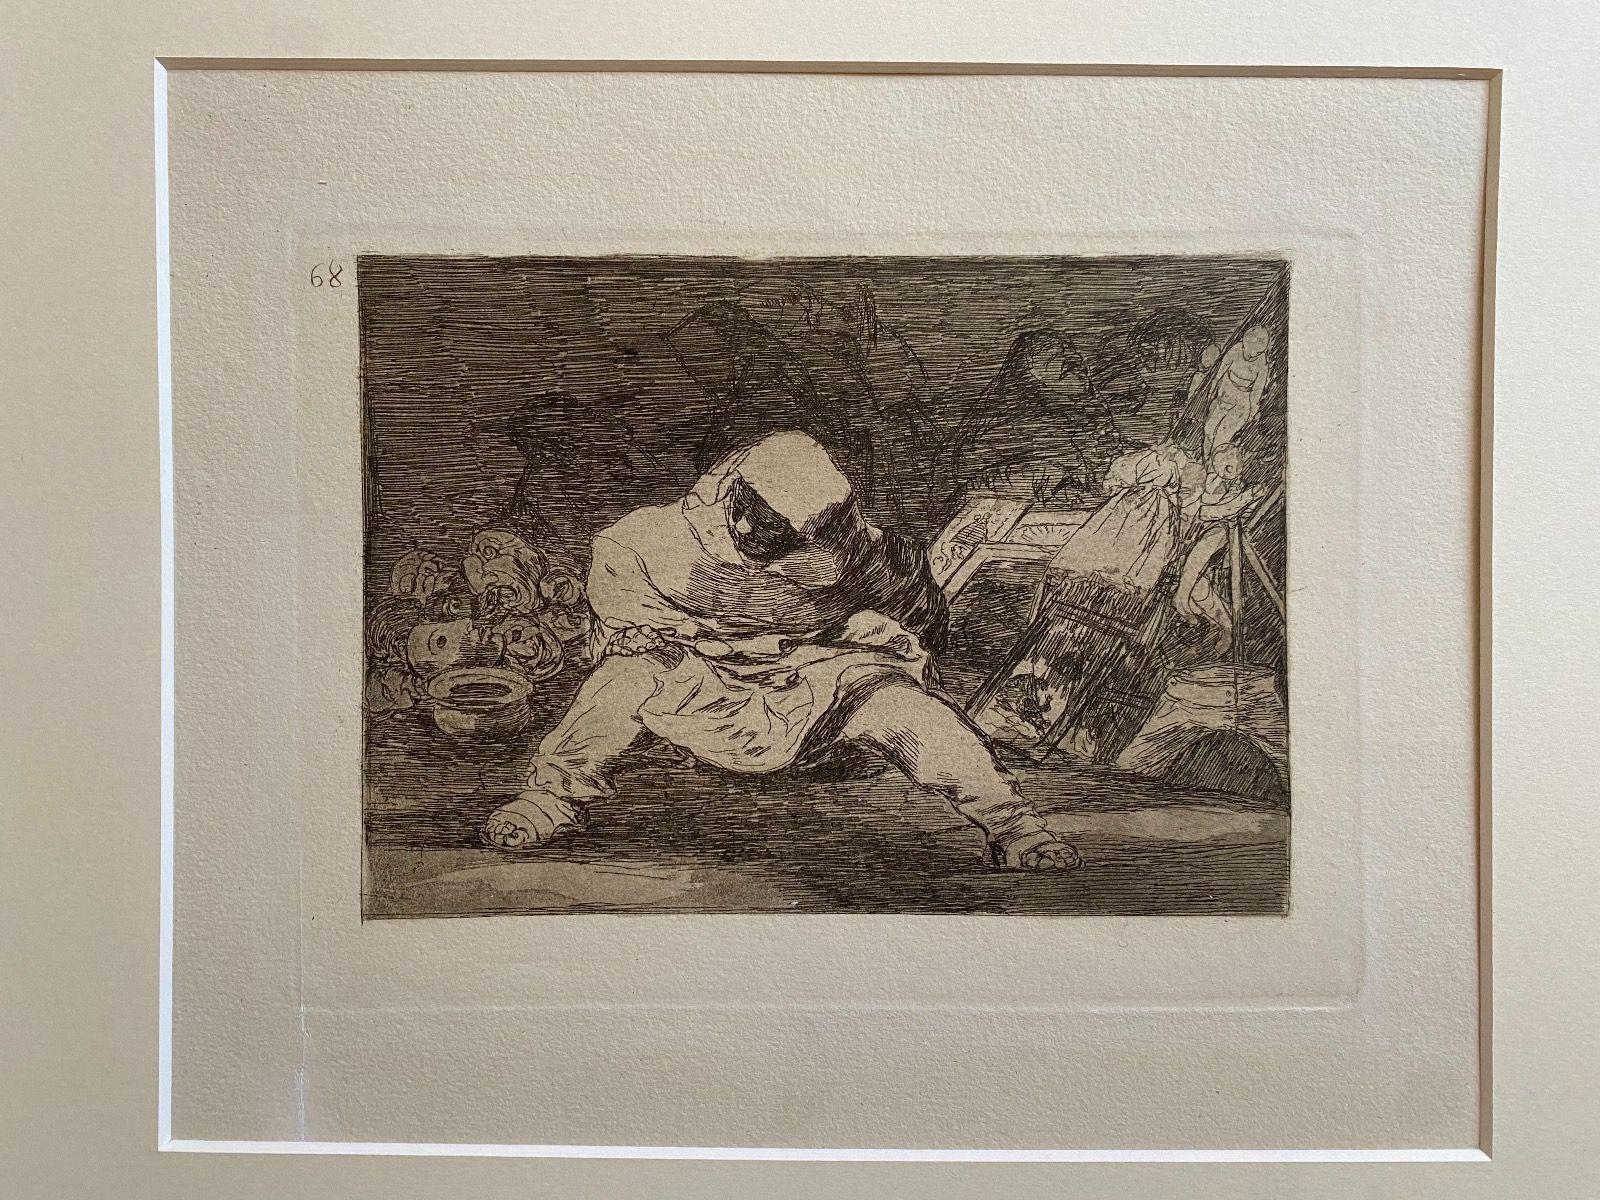 Que Locura  - La planche 68 de Los Desastres de la Guerra (Le désastre de la guerre) est une gravure originale en noir et blanc réalisée par Francisco Goya (1746-1828).

L'œuvre d'art est la planche n. 68 (1815) publiée en 1863.

Dimensions de la